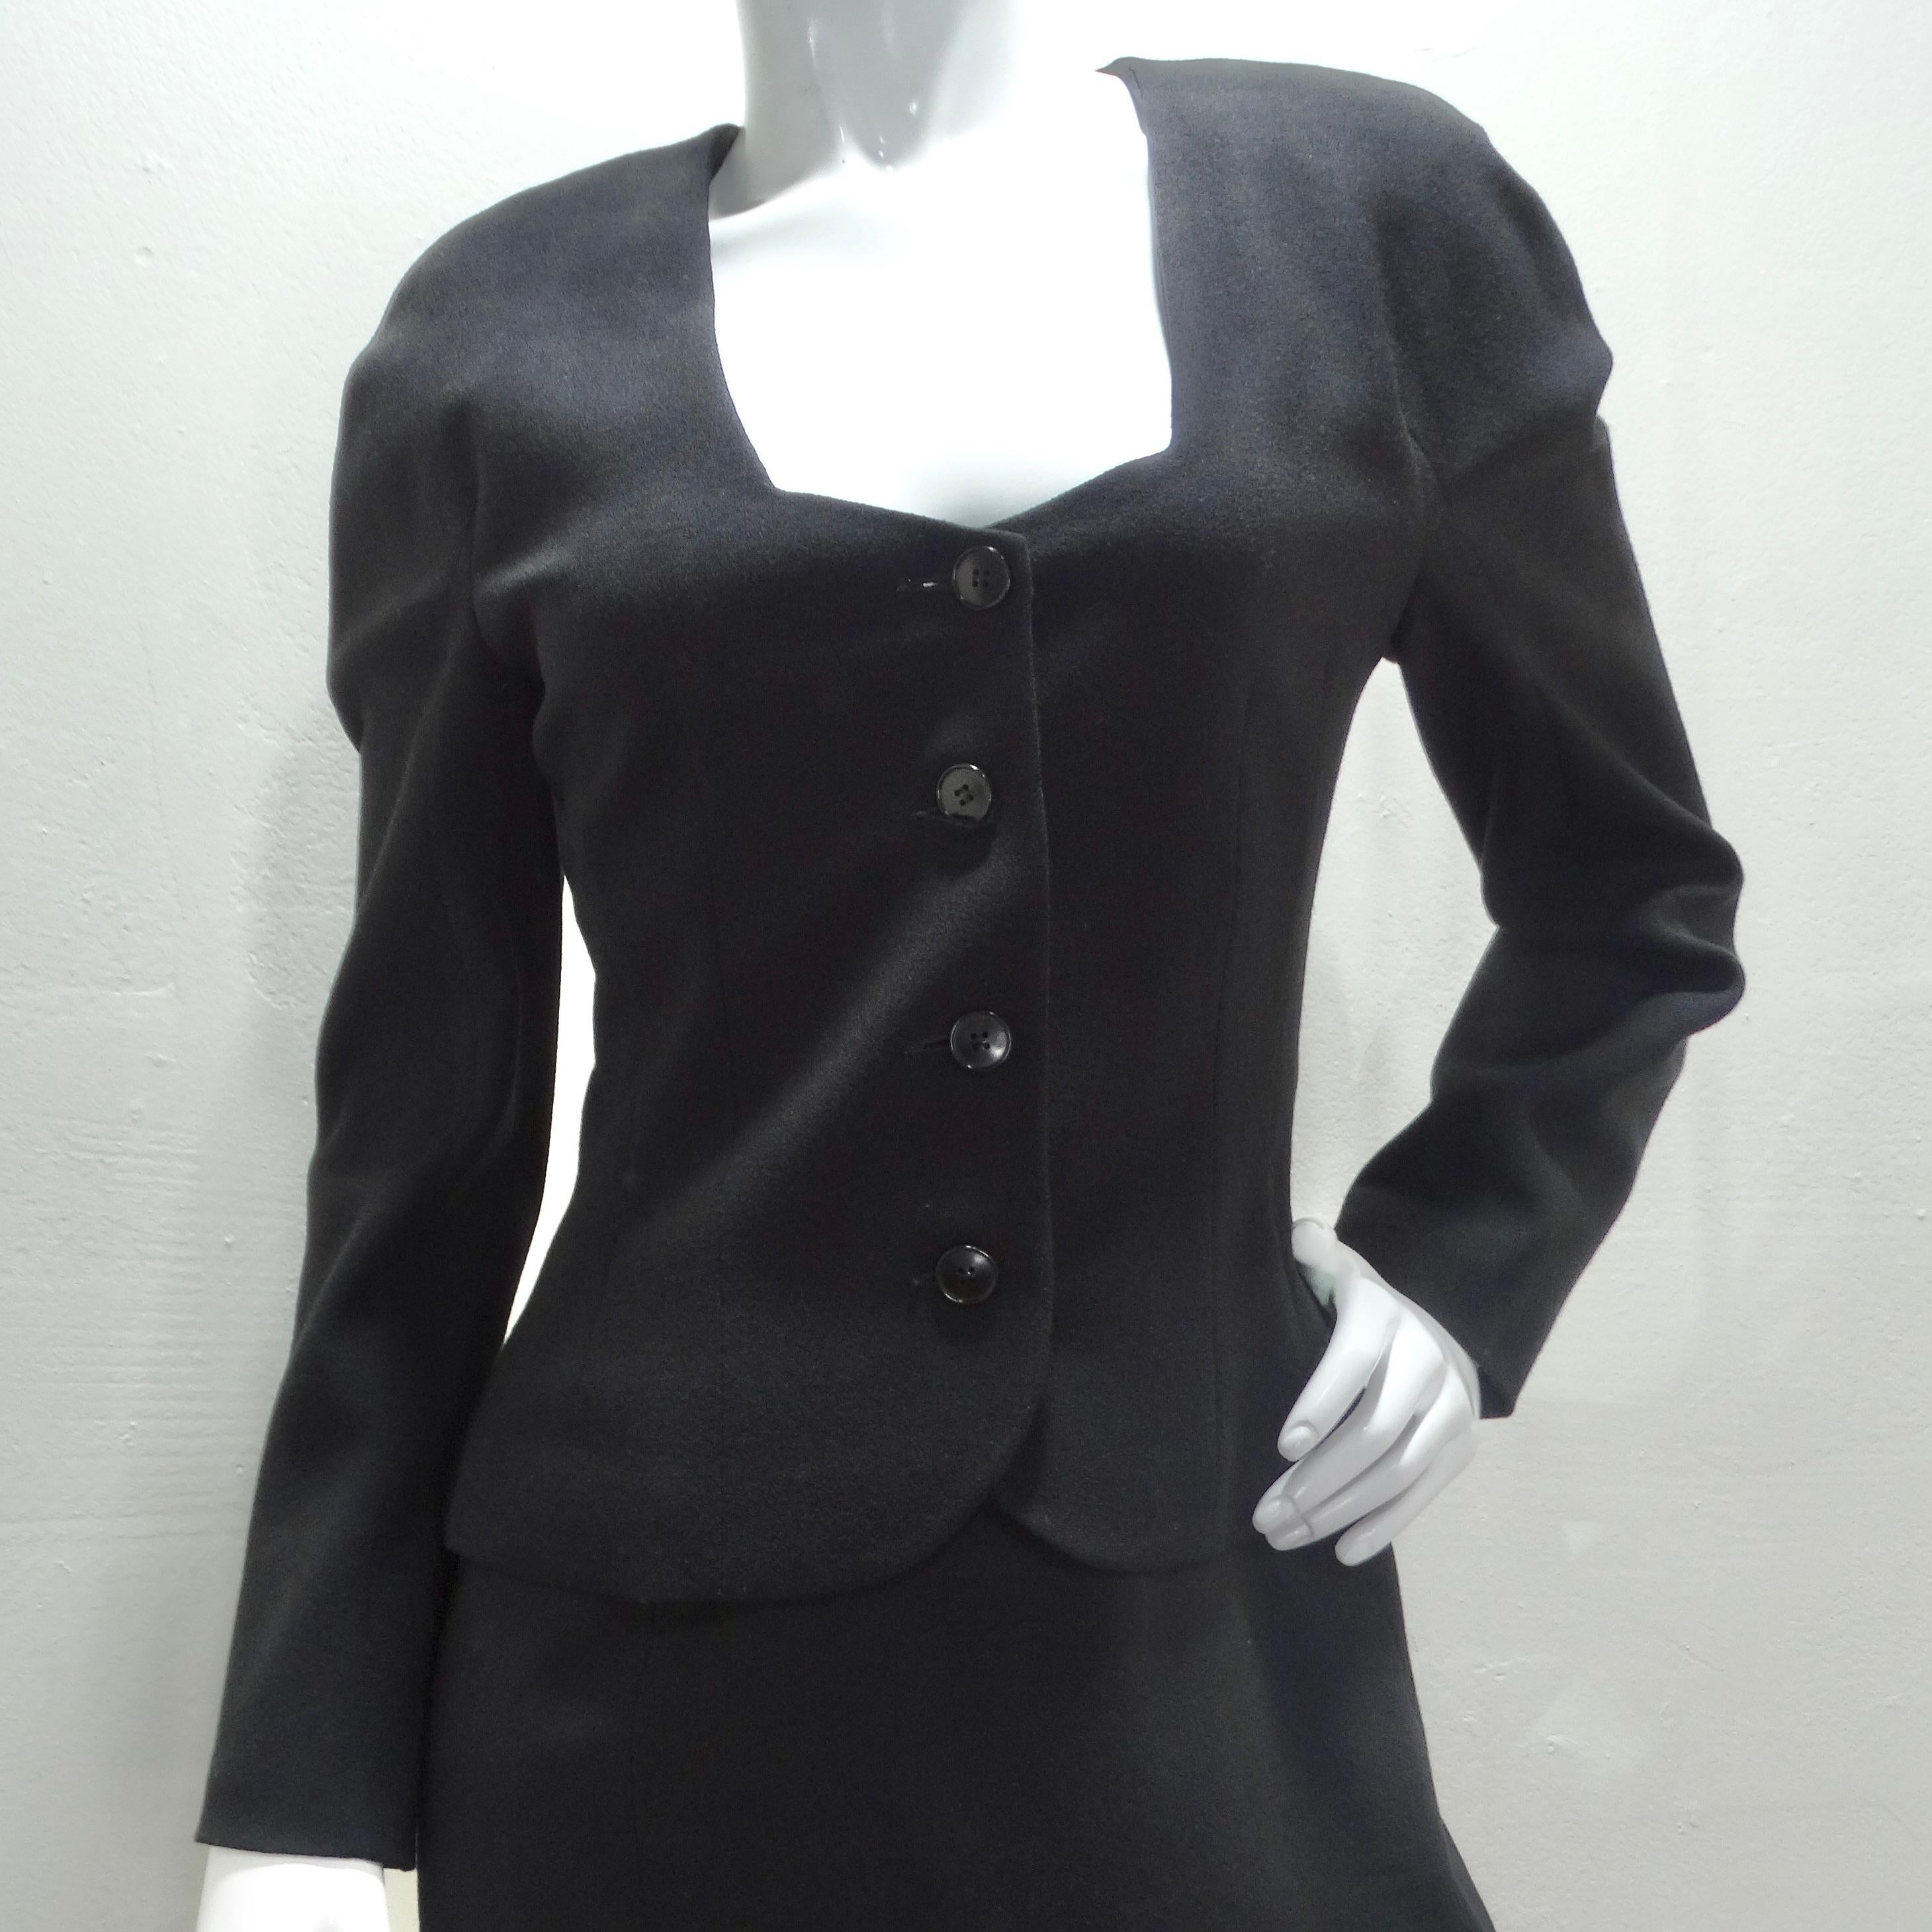 Entrez dans l'élégance intemporelle avec le tailleur jupe noir John Galliano des années 90. Ce superbe ensemble associe une jupe midi crayon classique à un haut à manches longues de style blazer sans col, doté d'une élégante découpe à l'encolure et